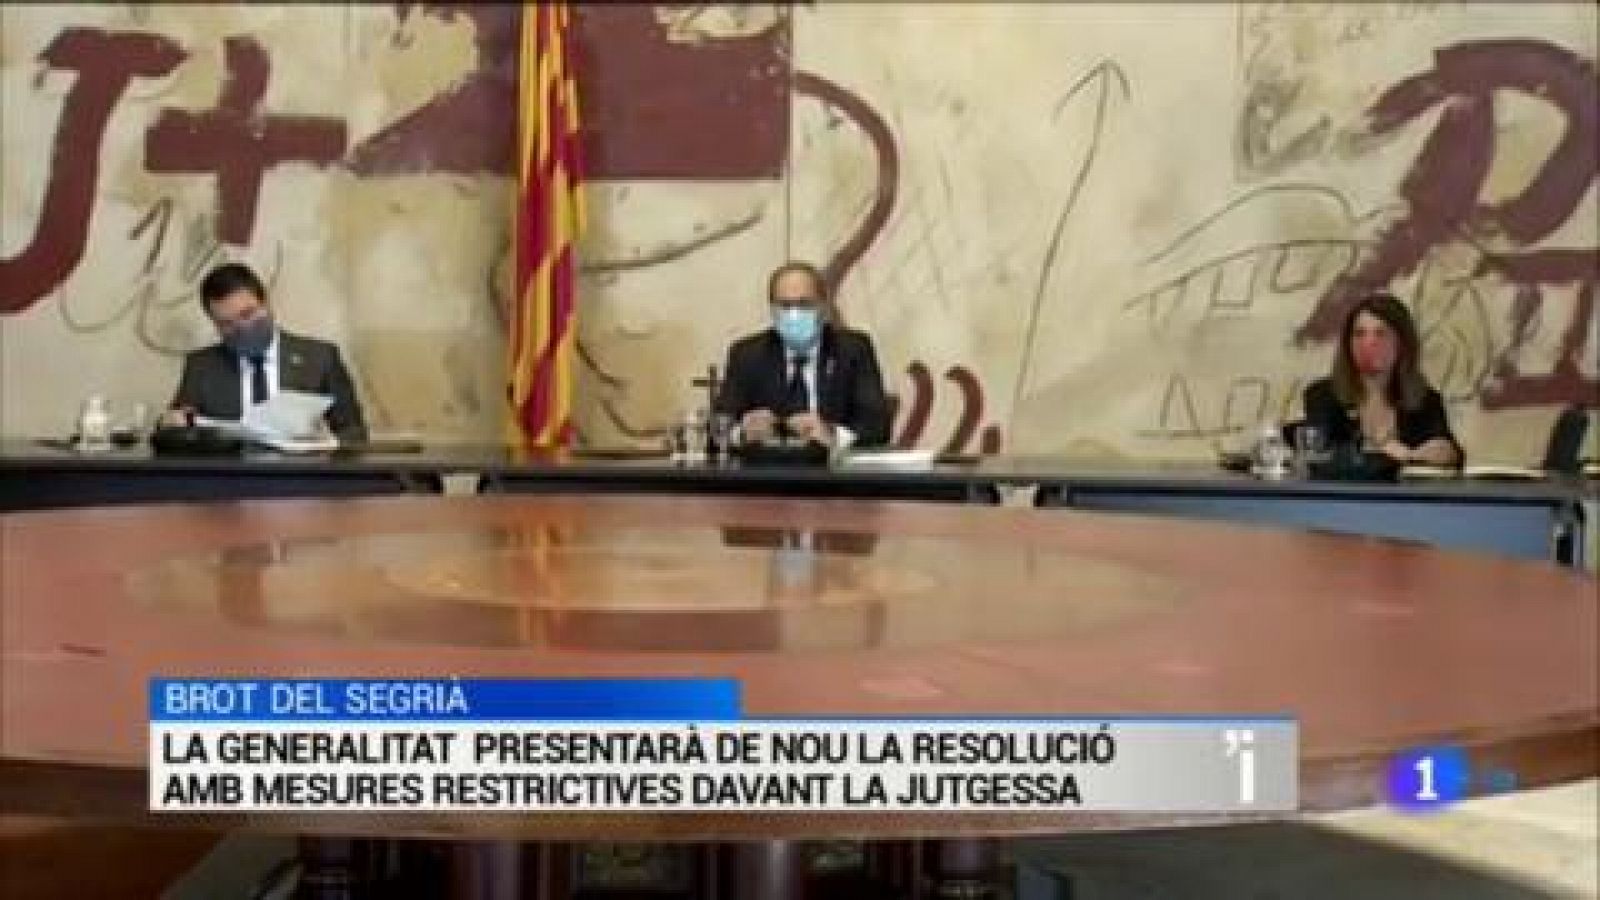 L'Informatiu | Sumari de les notícies del 14/07/2020 - RTVE.es